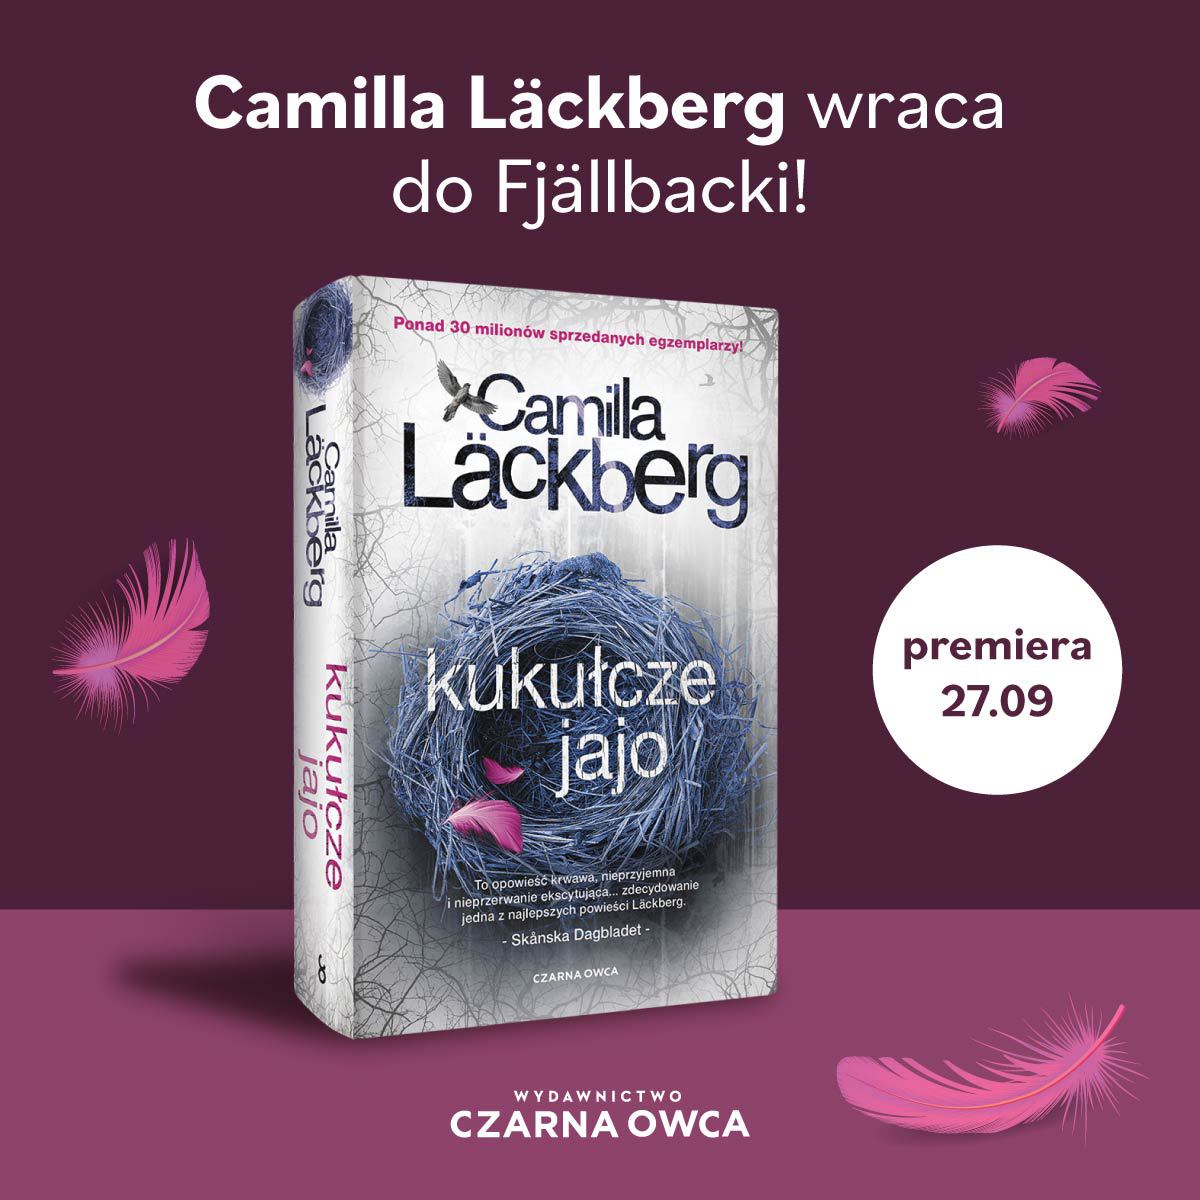 Camilla Lackber, "Kukułcze jajo", Wydawnictwo Czarna Owca